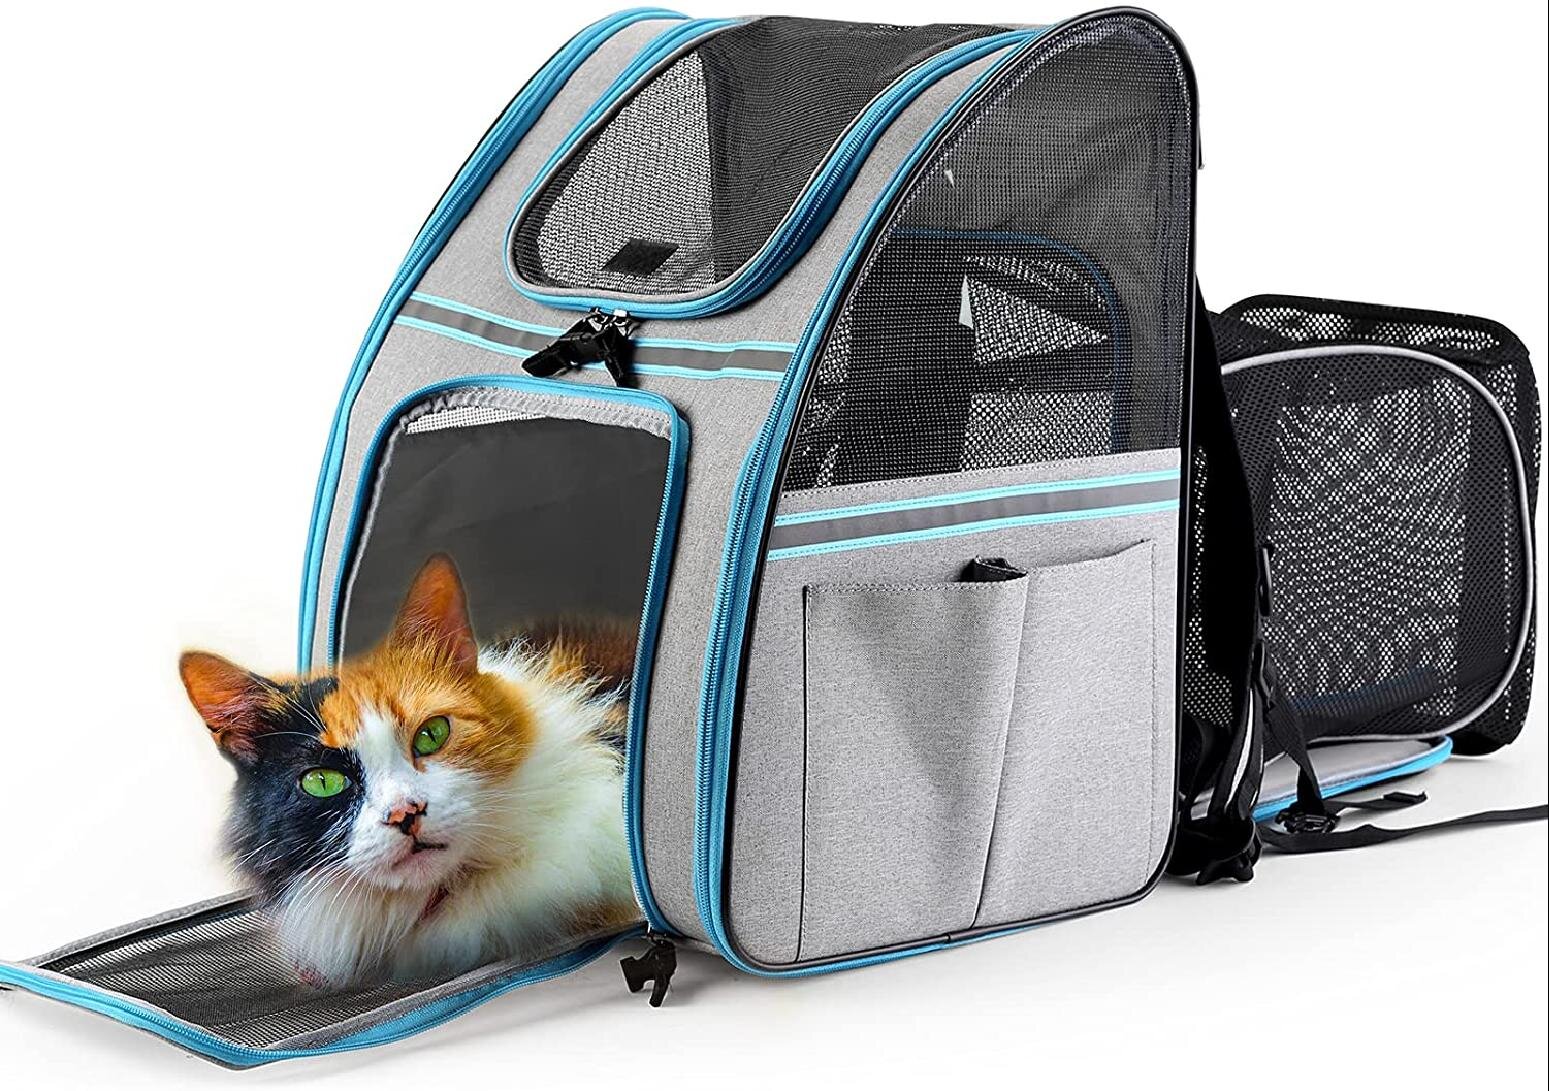 New Dog Cat Carrier Pet Comfy Portable Outdoor Kennel Oxford Shoulder Bag Tote